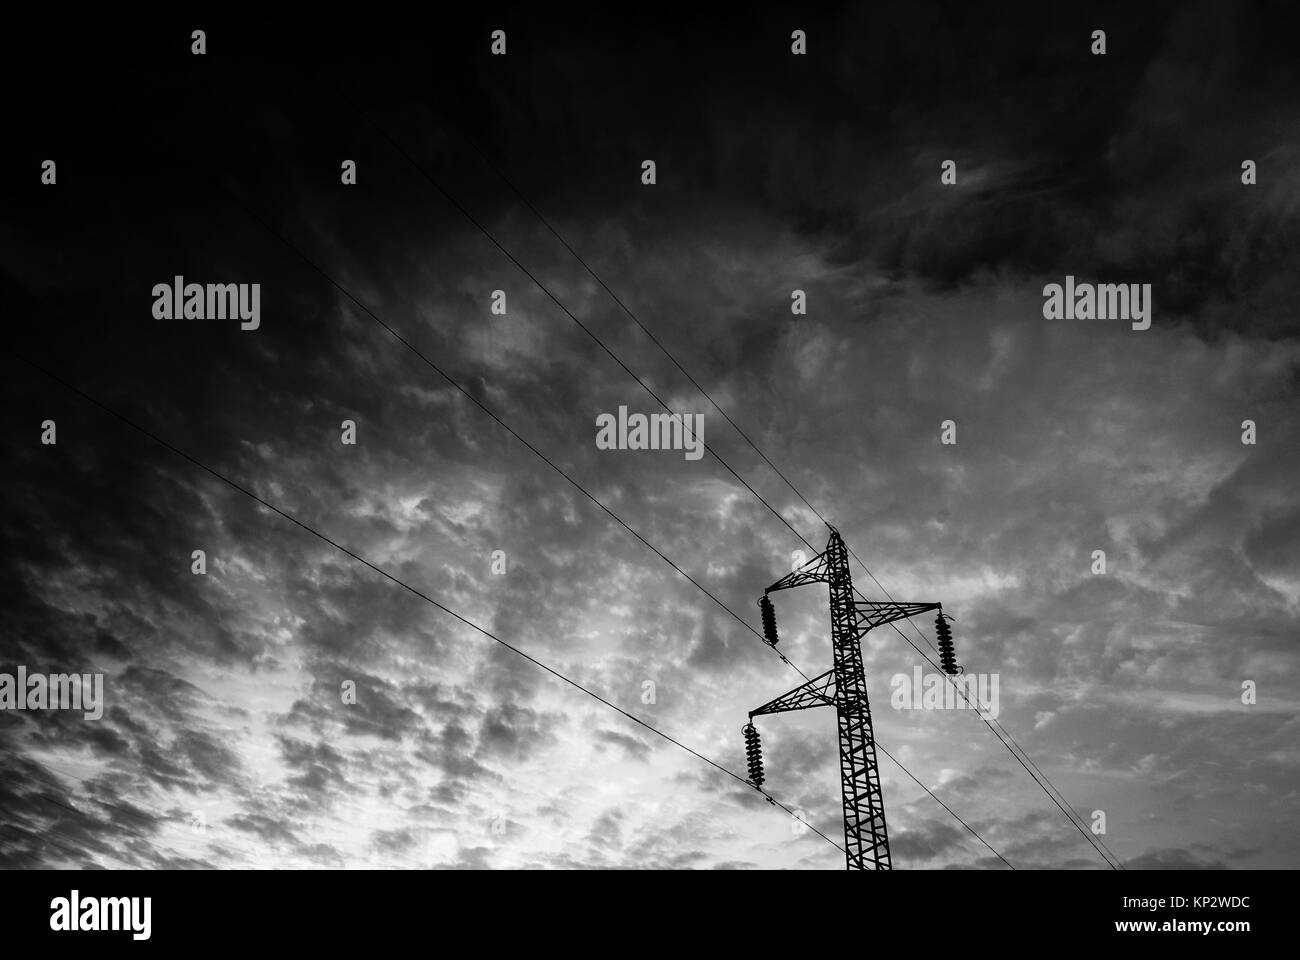 Treillis électriques et un ciel dramatique - photo en noir et blanc Banque D'Images